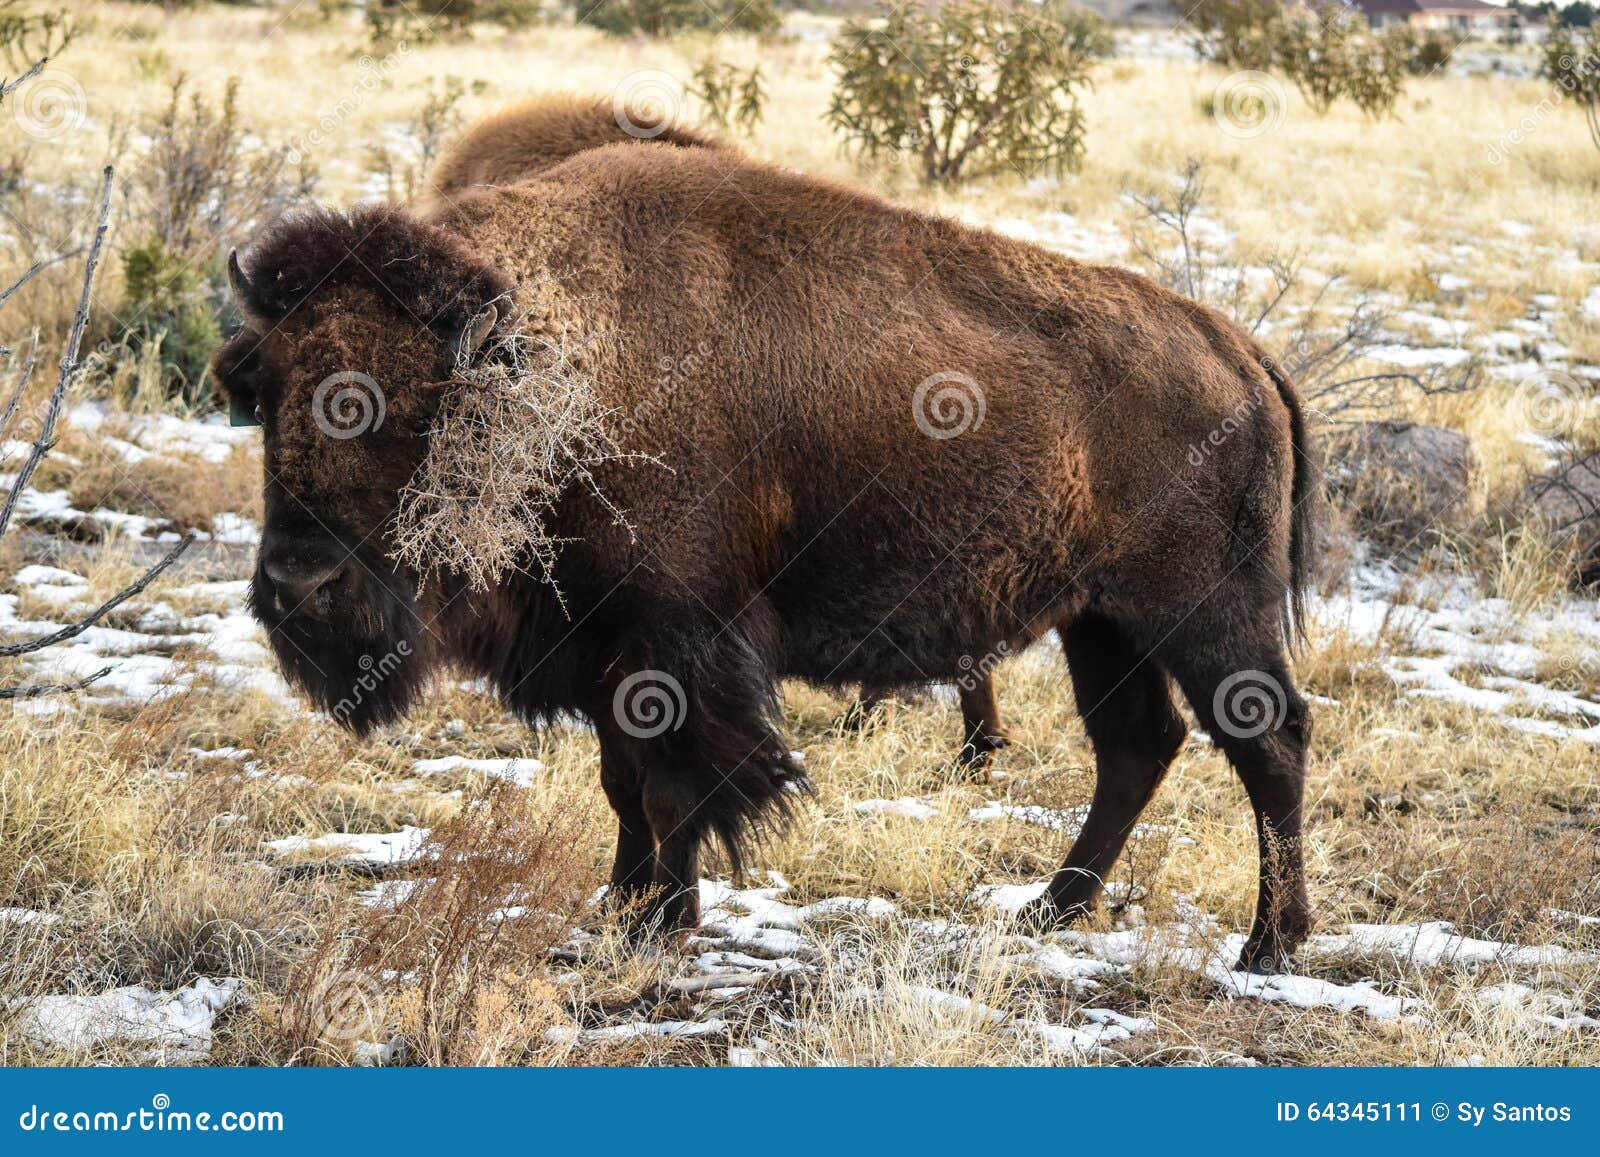 cow buffalo clipart - photo #38